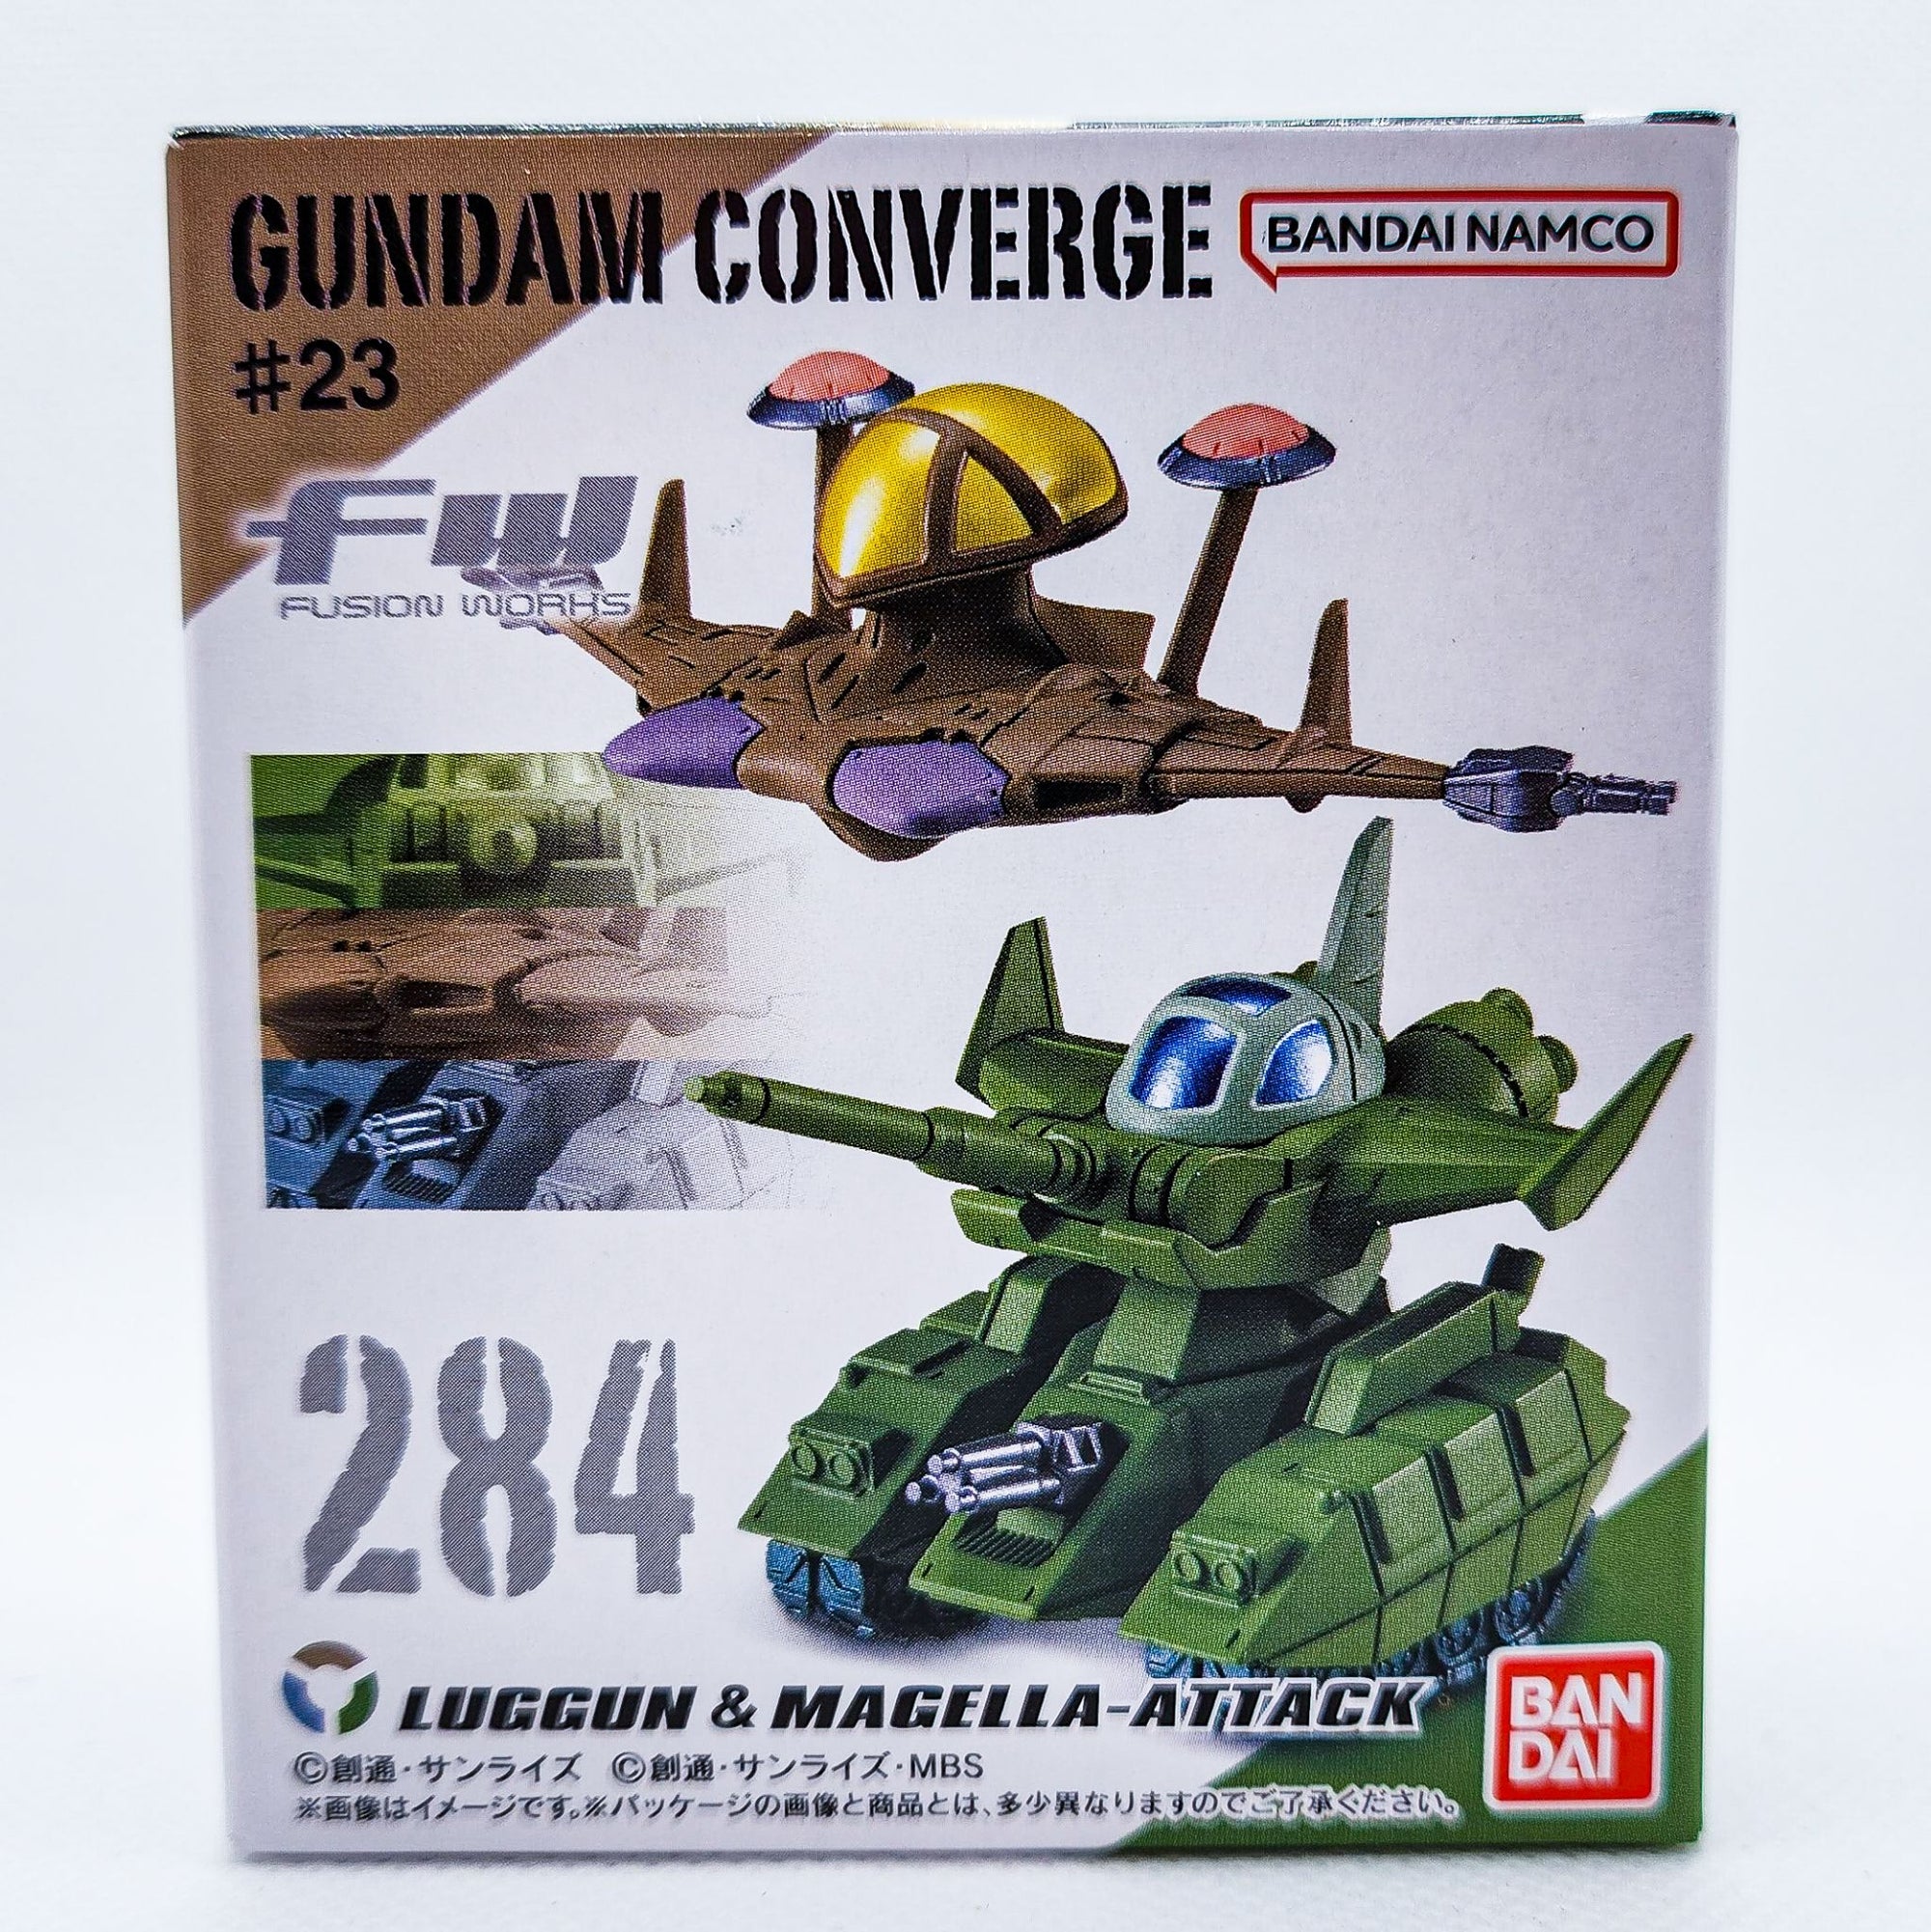 Gundam Converge #284 Luggun and Magella Attack by Bandai - 1